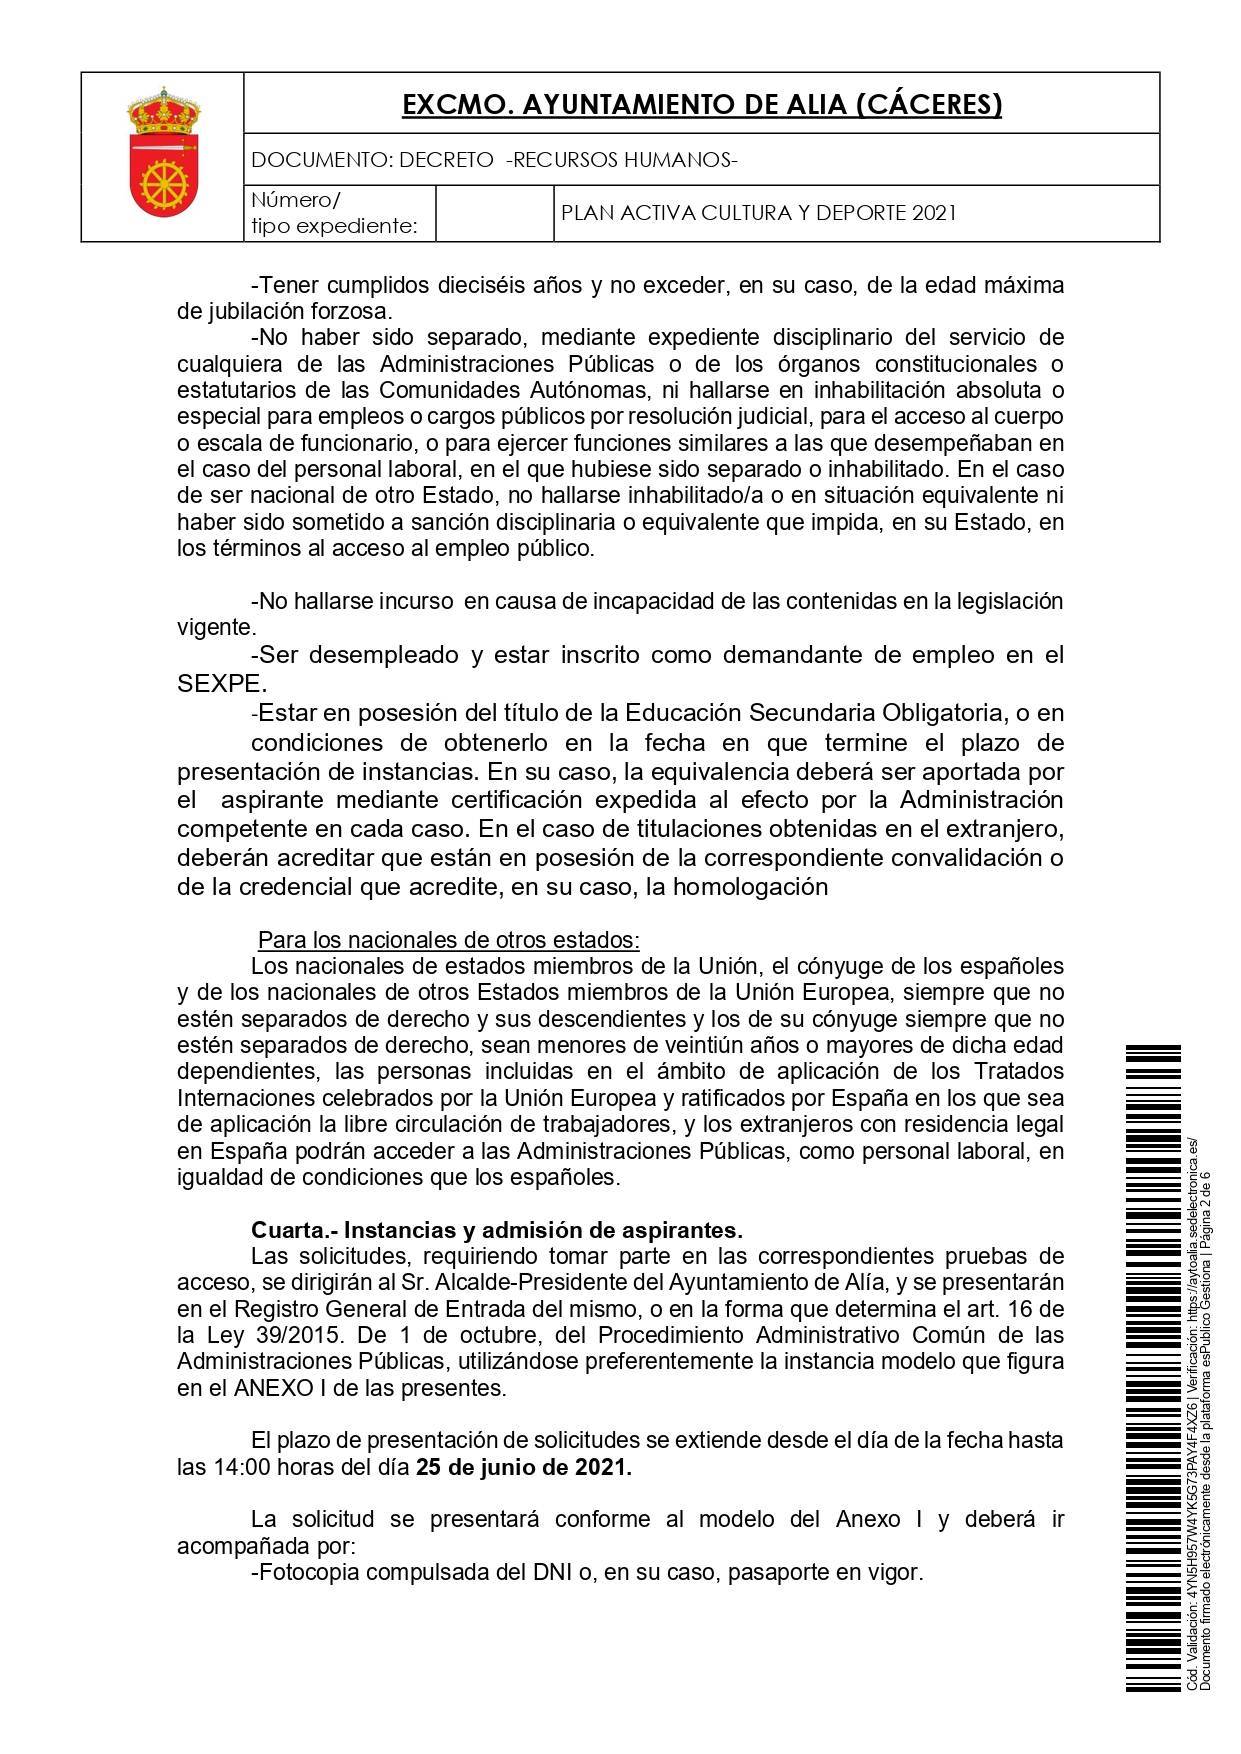 2 técnicos de dinamización sociocultural (2021) - Alía (Cáceres) 2